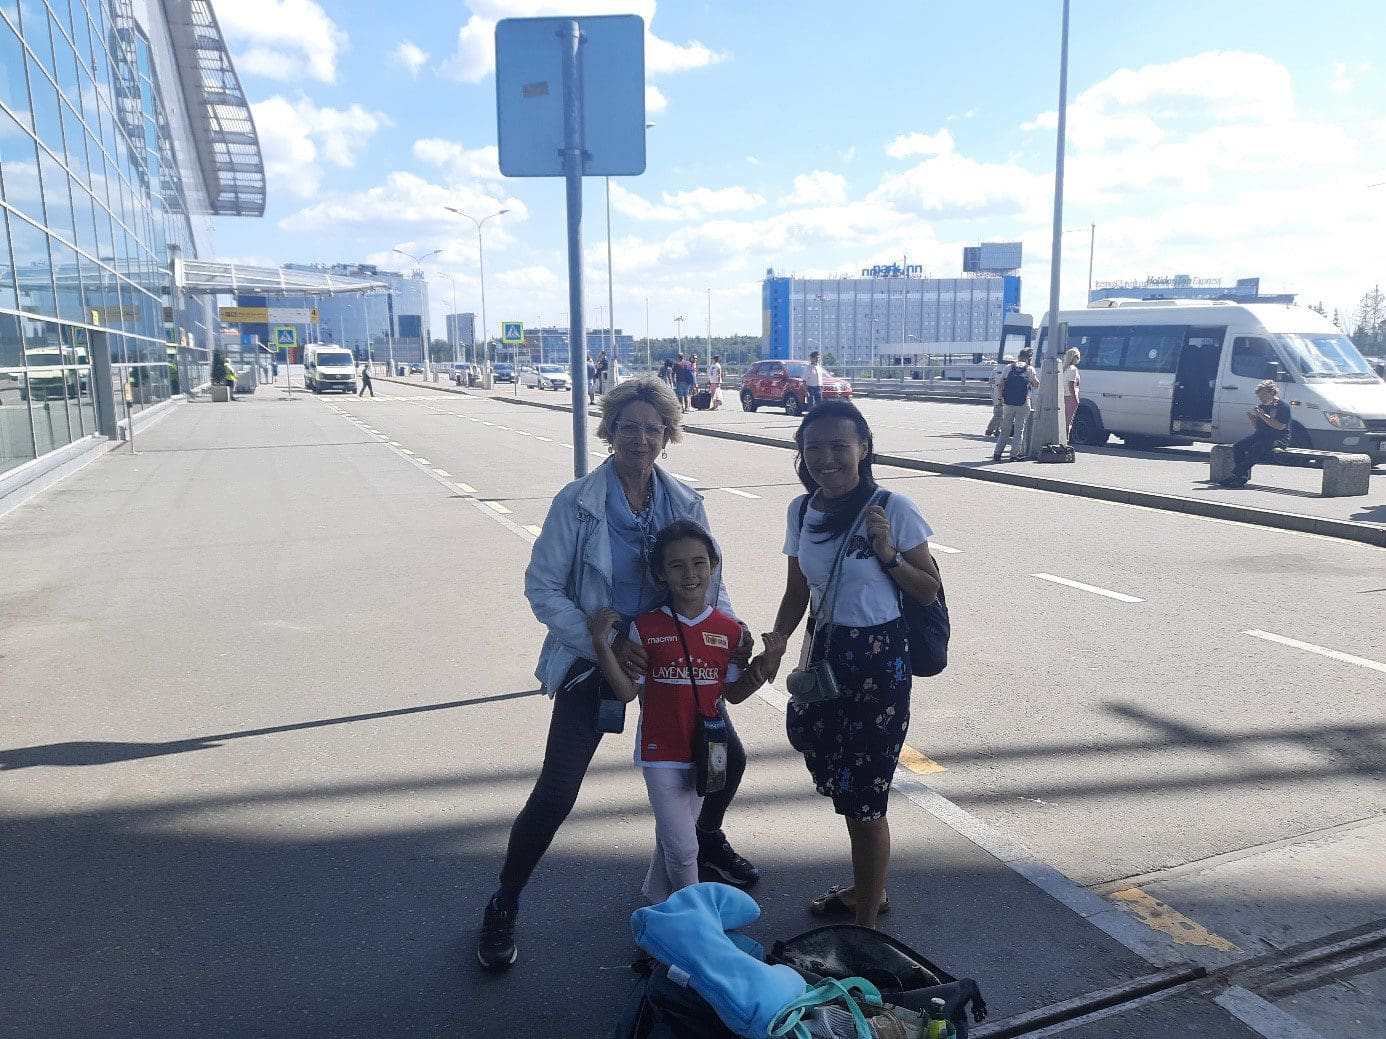 Moscow Sheremetyevo airport